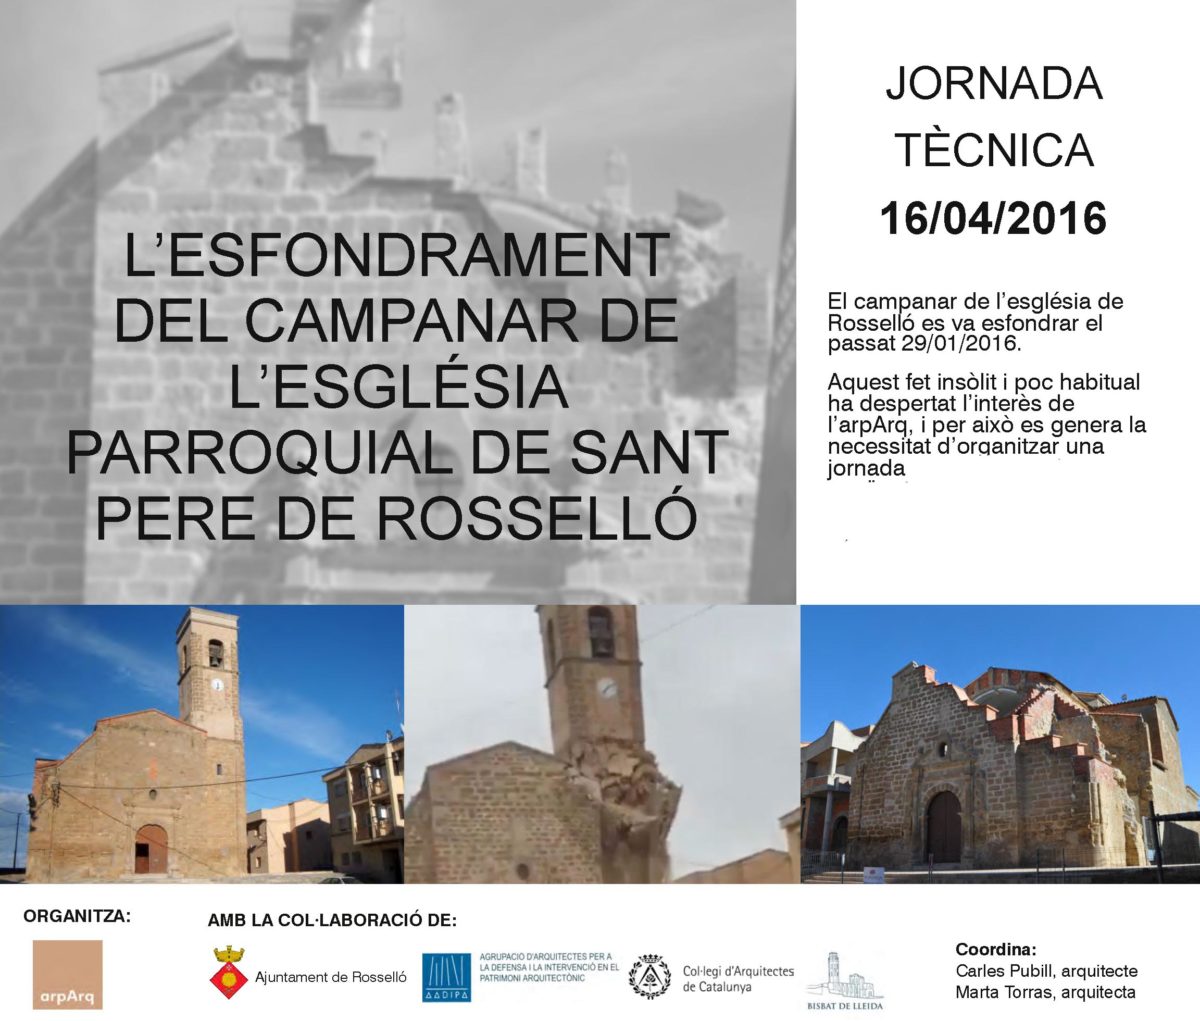 Jornada Tècnica: L’esfondrament del campanar de l’església parroquial de Sant Pere de Rosselló